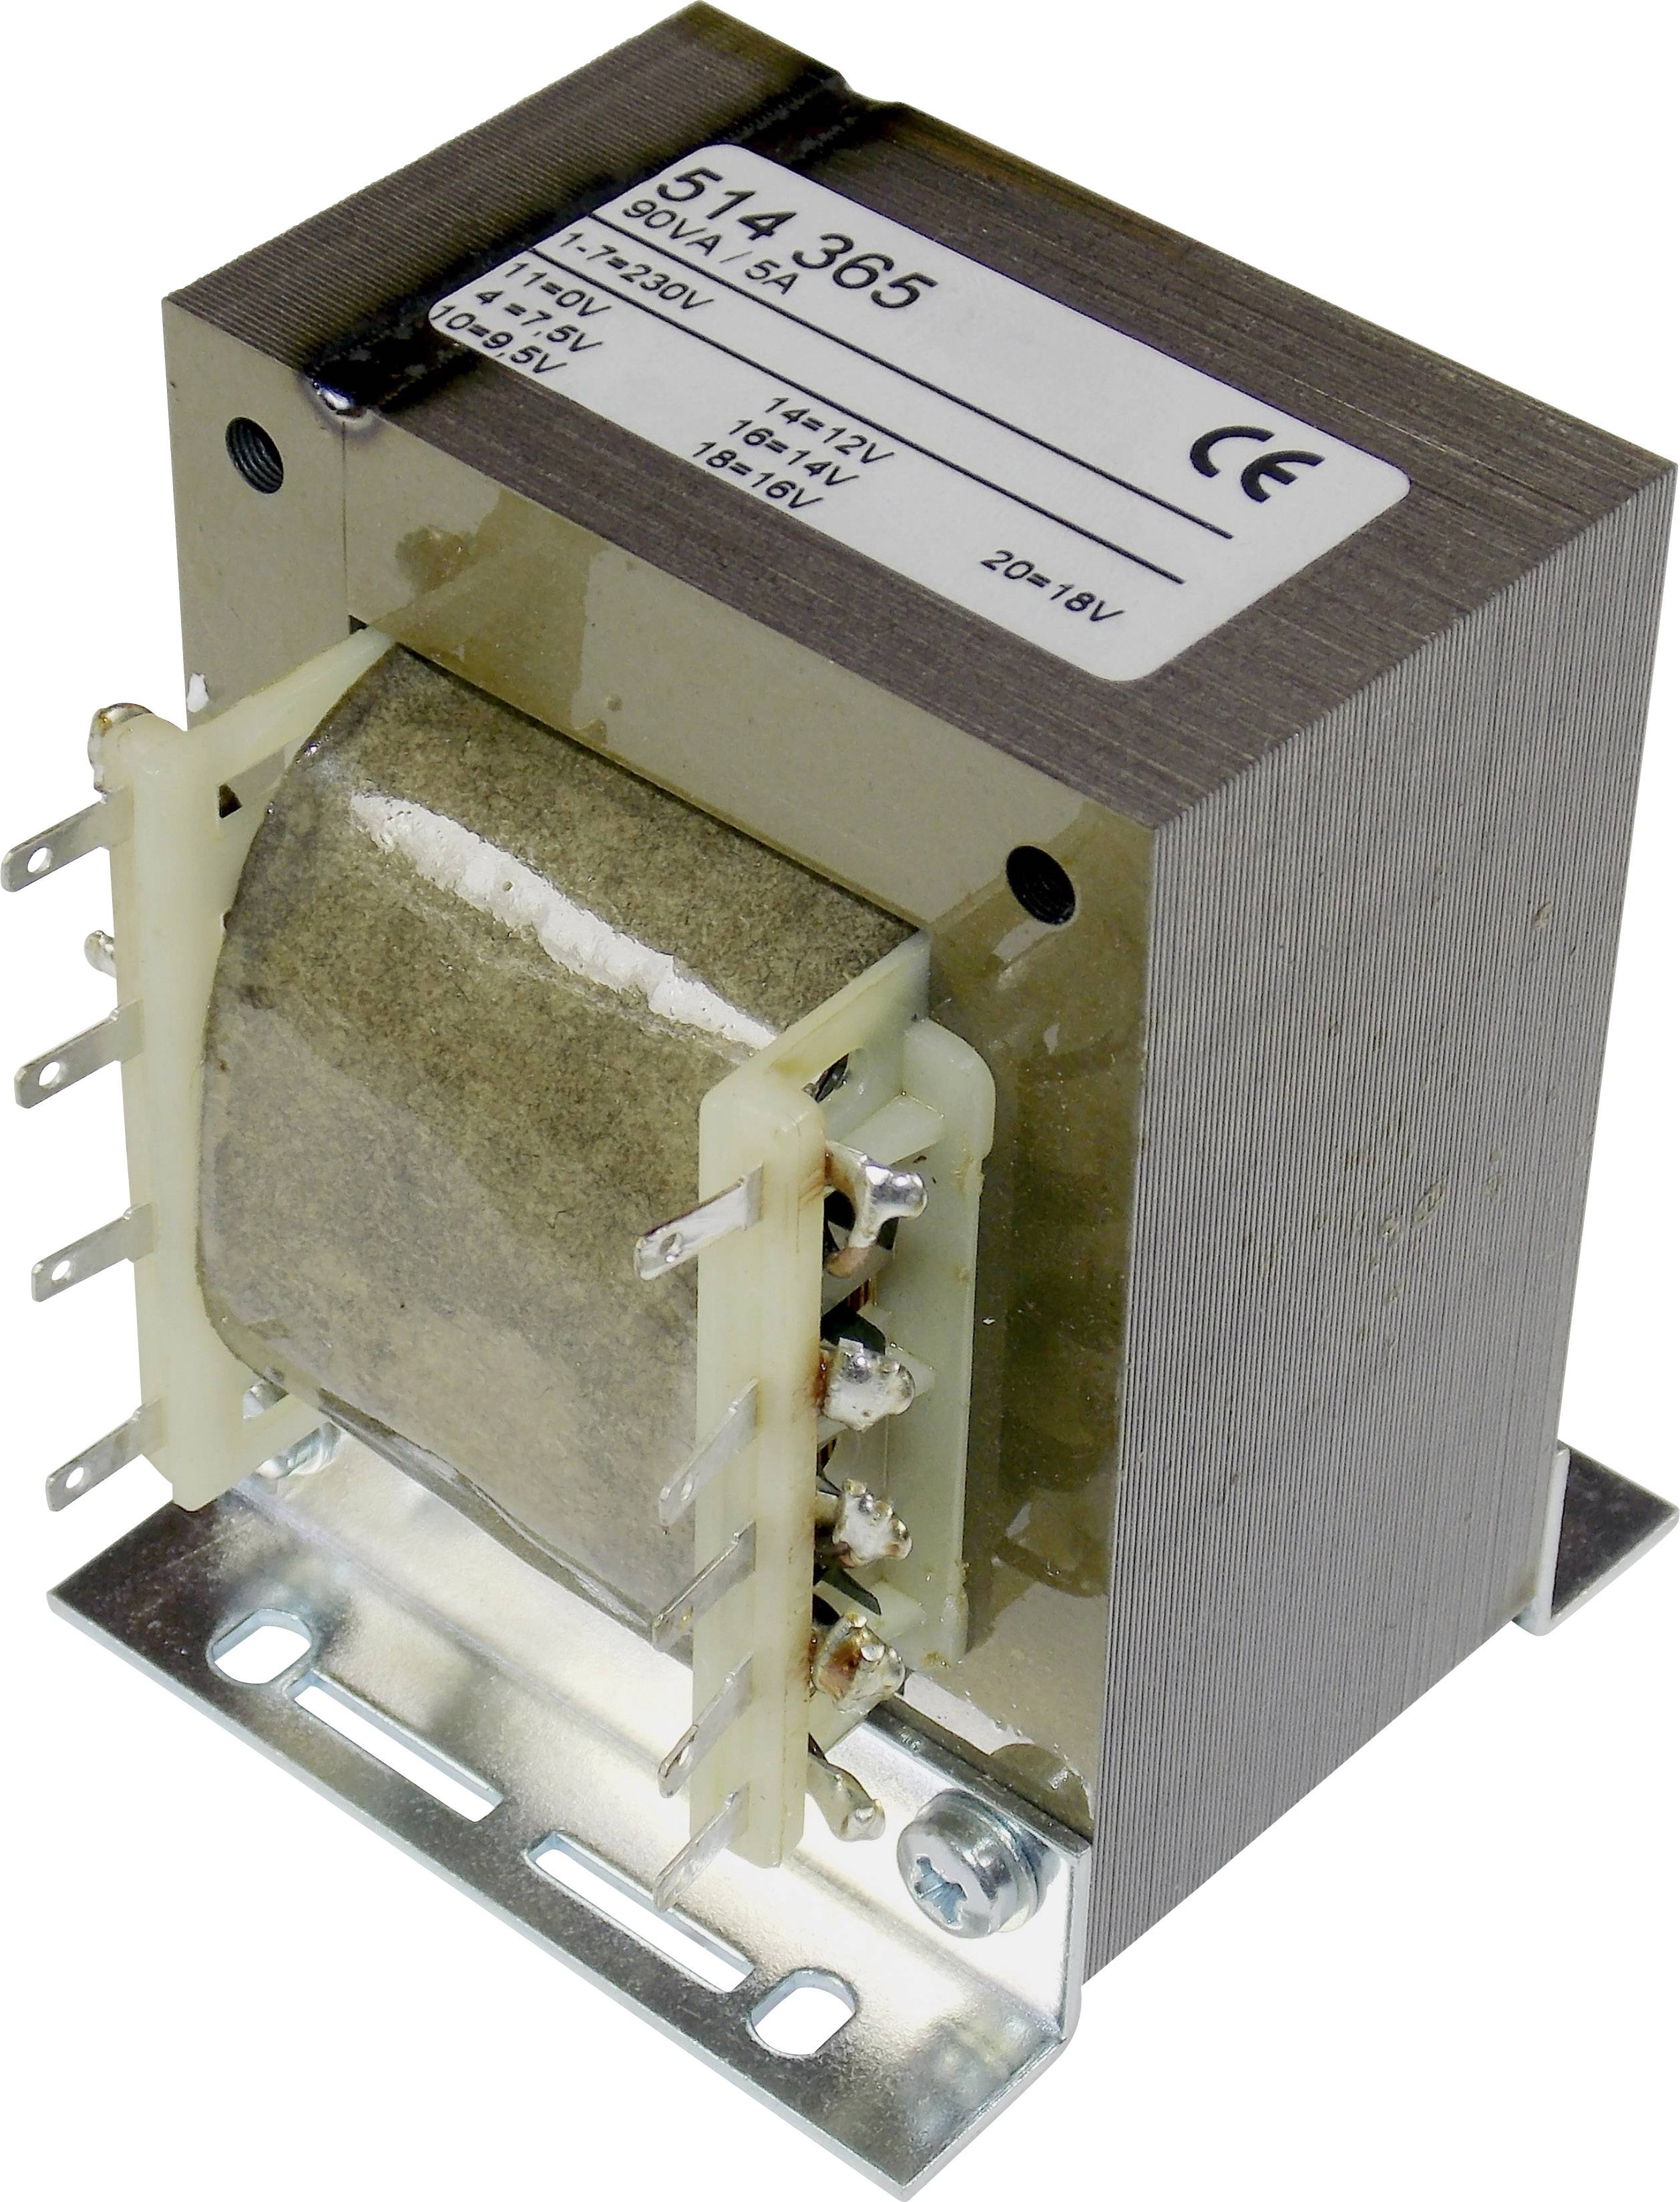 ELMA TT IZ 68 Universal-Netztransformator 1 x 230 V 1 x 7.5 V/AC, 9.5 V/AC, 12 V/AC, 14 V/AC